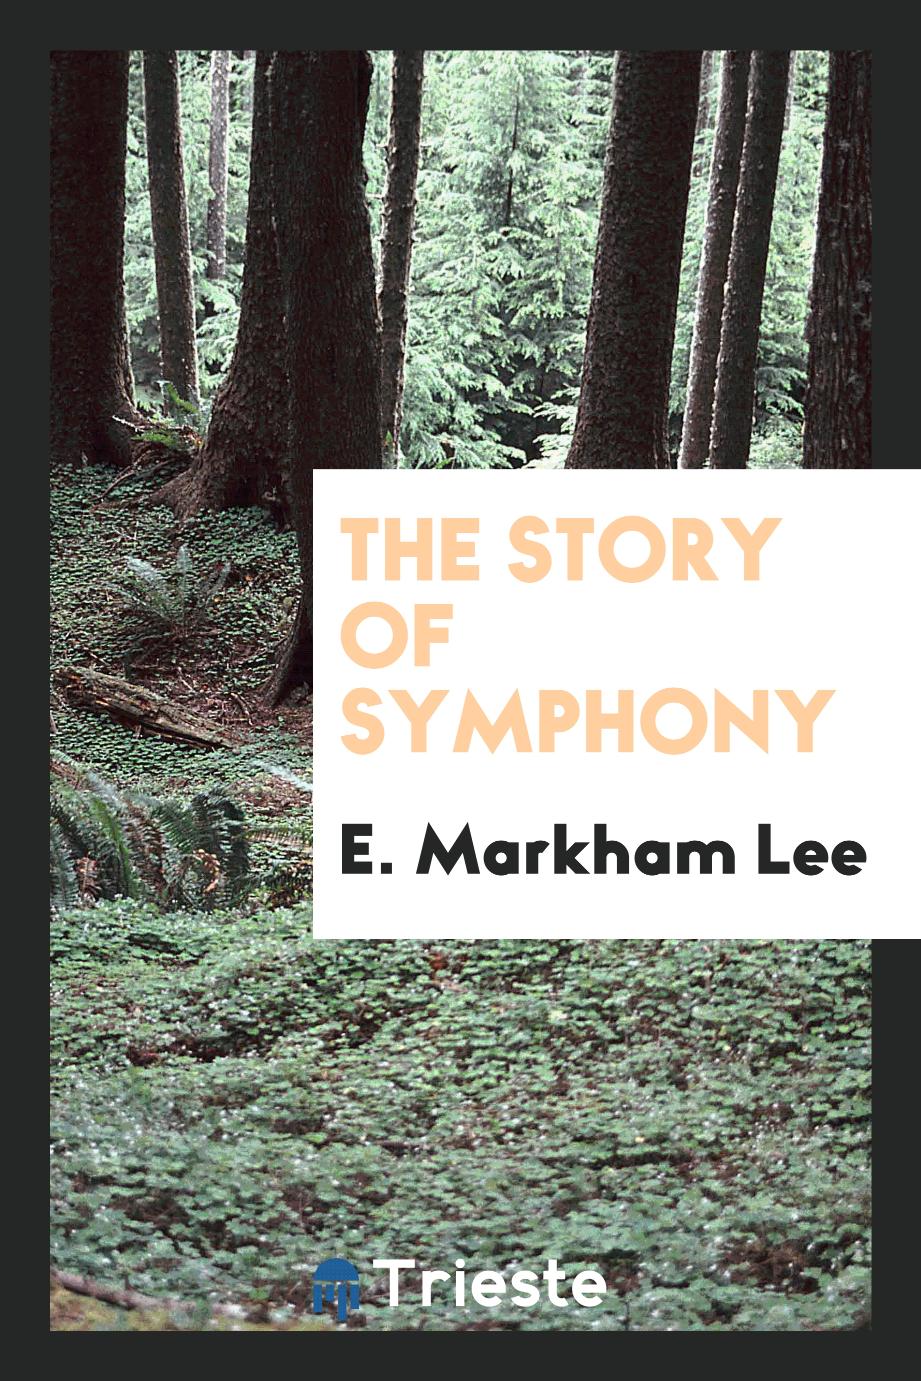 The story of symphony